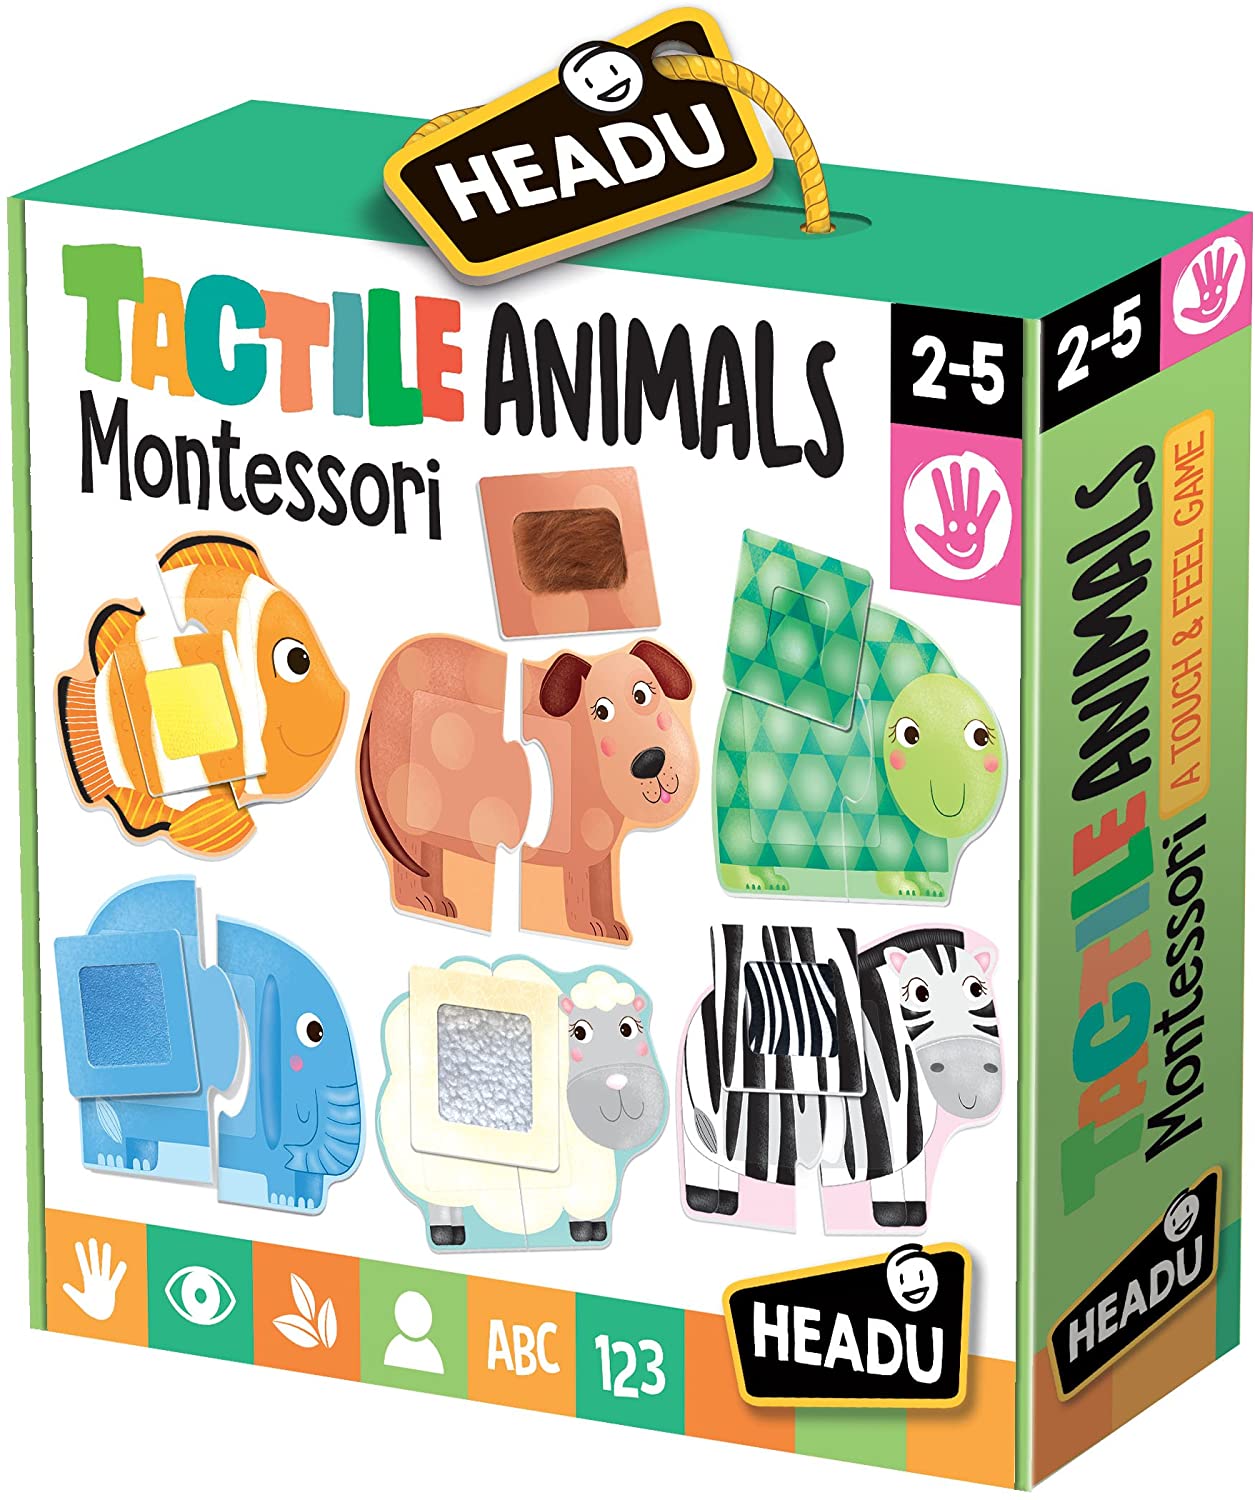 Tactile Animals Montessori HEADU 